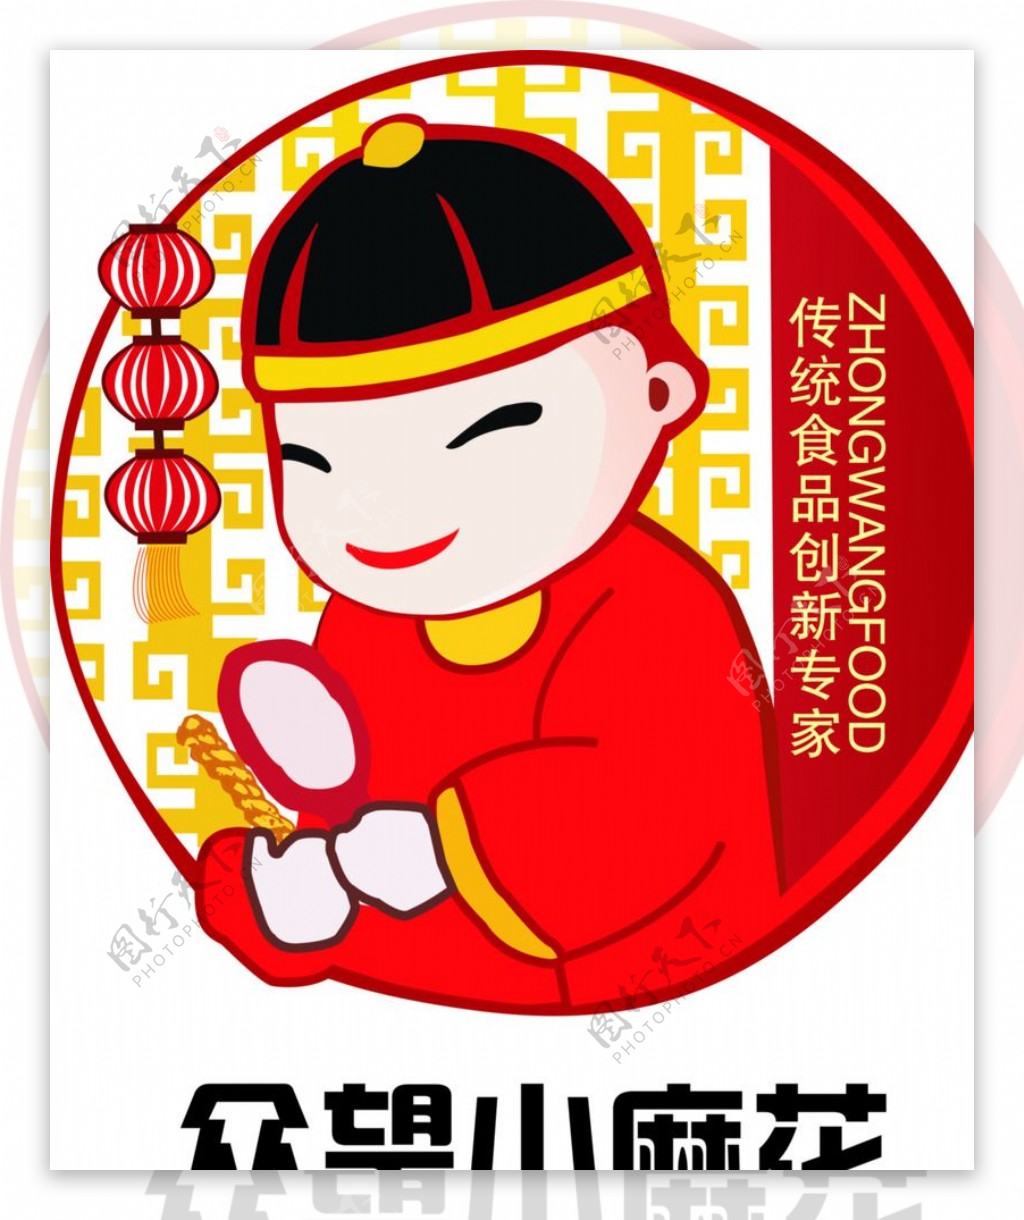 众望小麻花logo